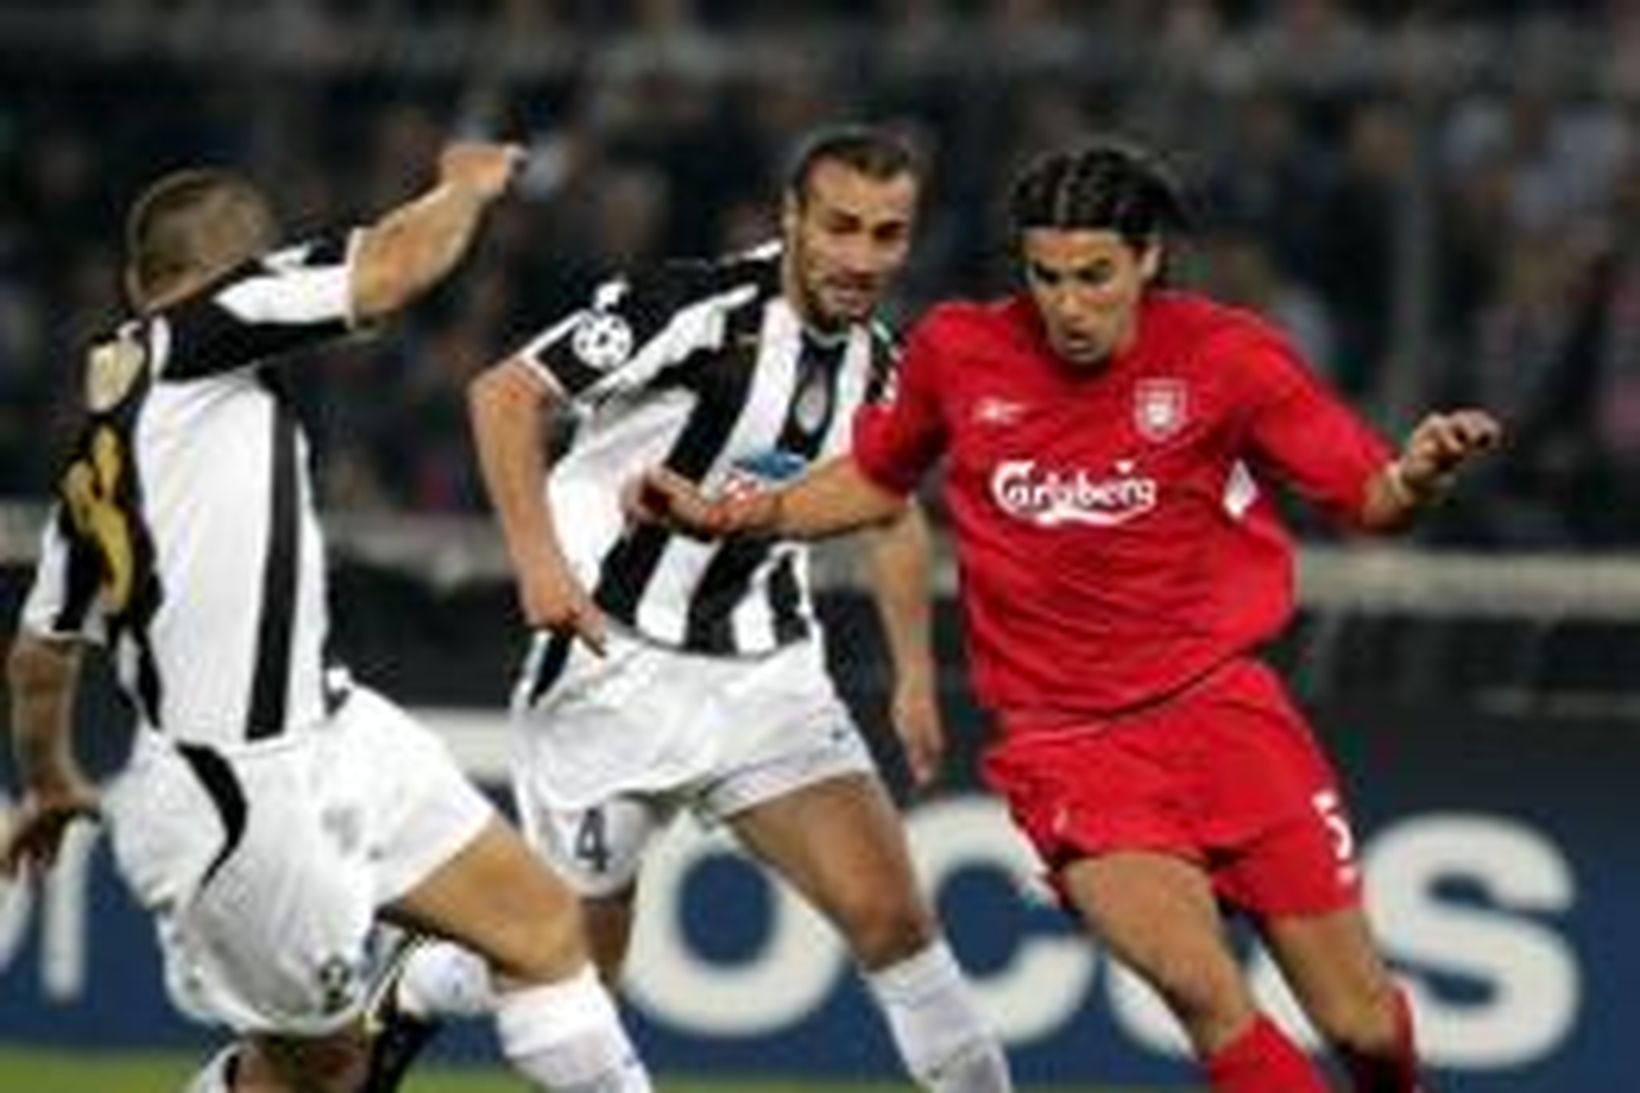 Milan Baros framherji Liverpool í baráttu við Fabio Cannavaro.